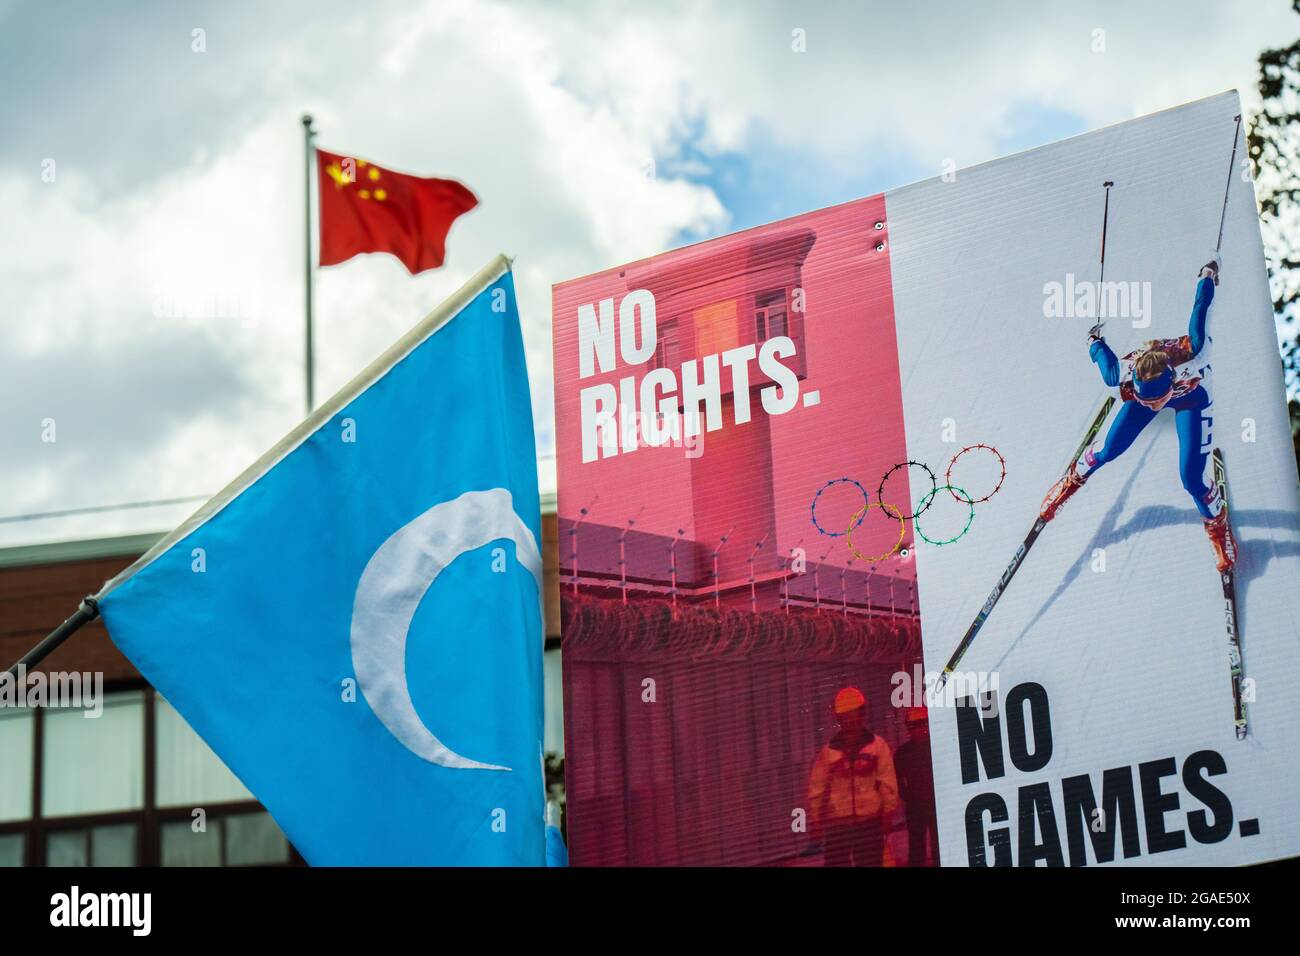 Les manifestants brandisent un drapeau du Turkestan oriental (Uyghur) devant le consulat chinois de Toronto, EN ONTARIO, alors qu'ils appellent au boycott des Jeux olympiques de Beijing. Banque D'Images